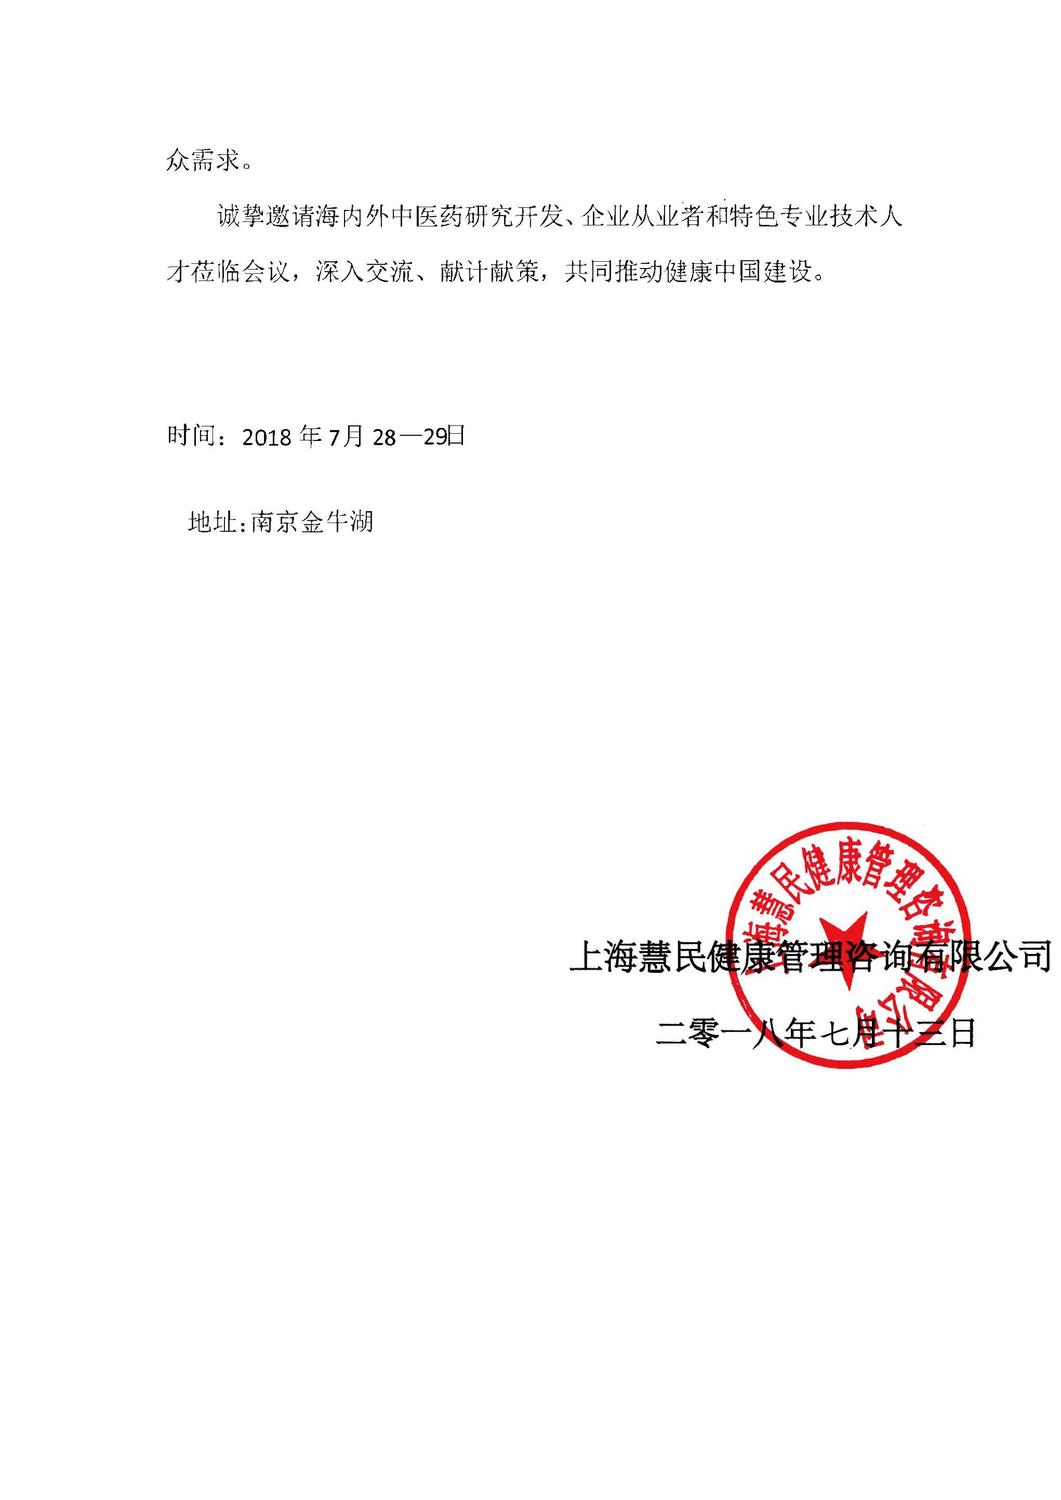 2018年7月南京会议通知_页面_2.jpg